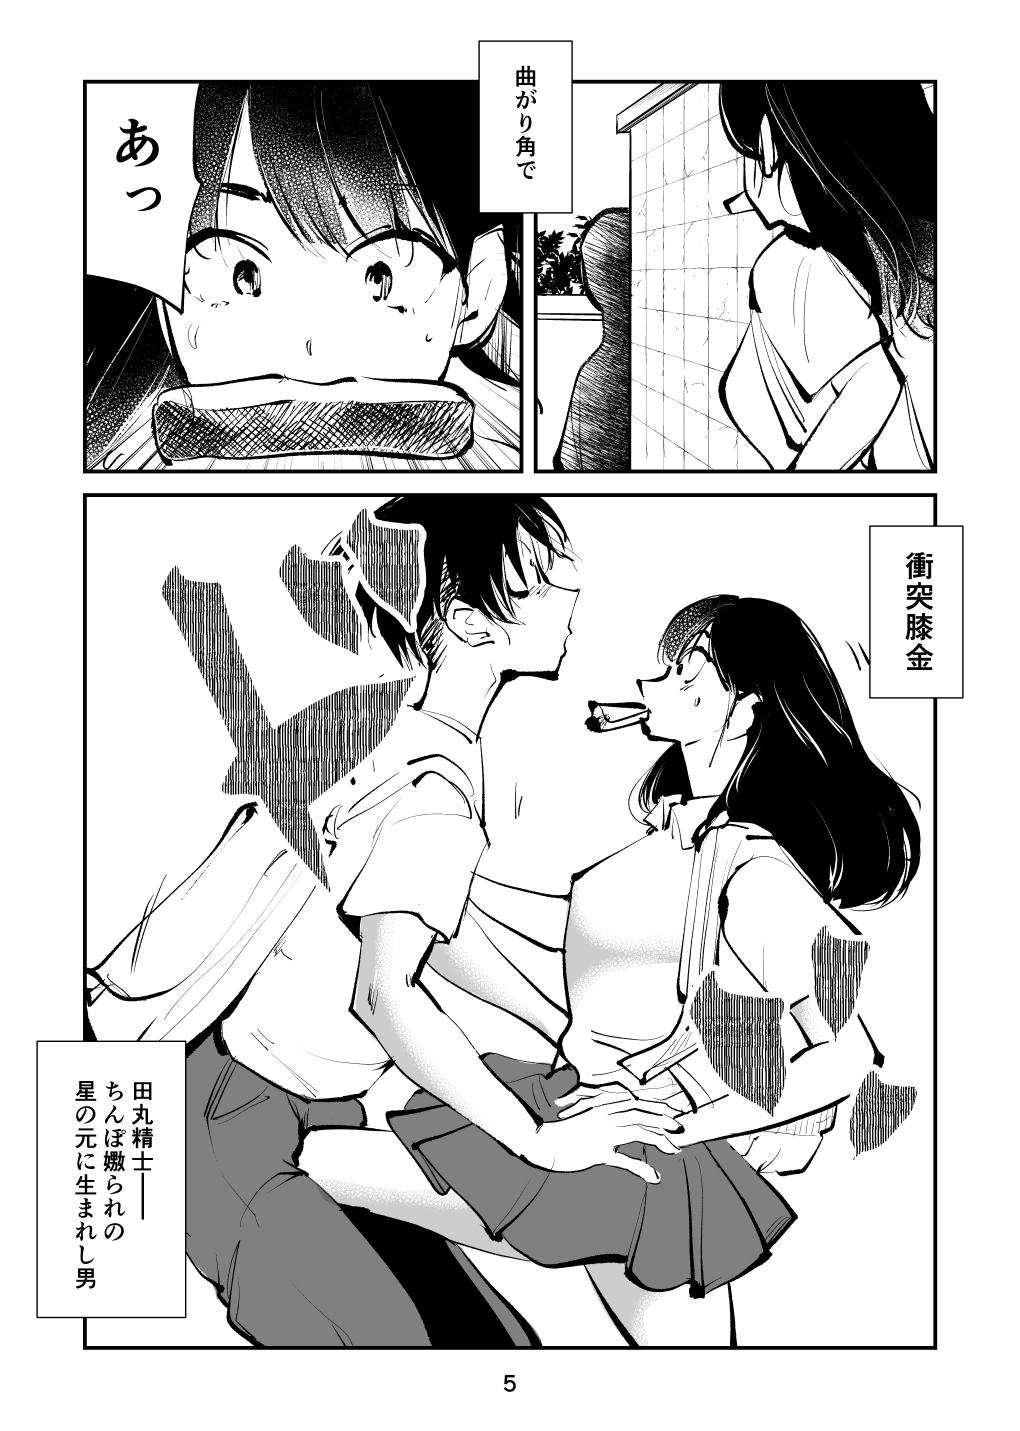 Selfie Chinpo Shiikukakari 3 - Original Hot Girl Fuck - Page 5